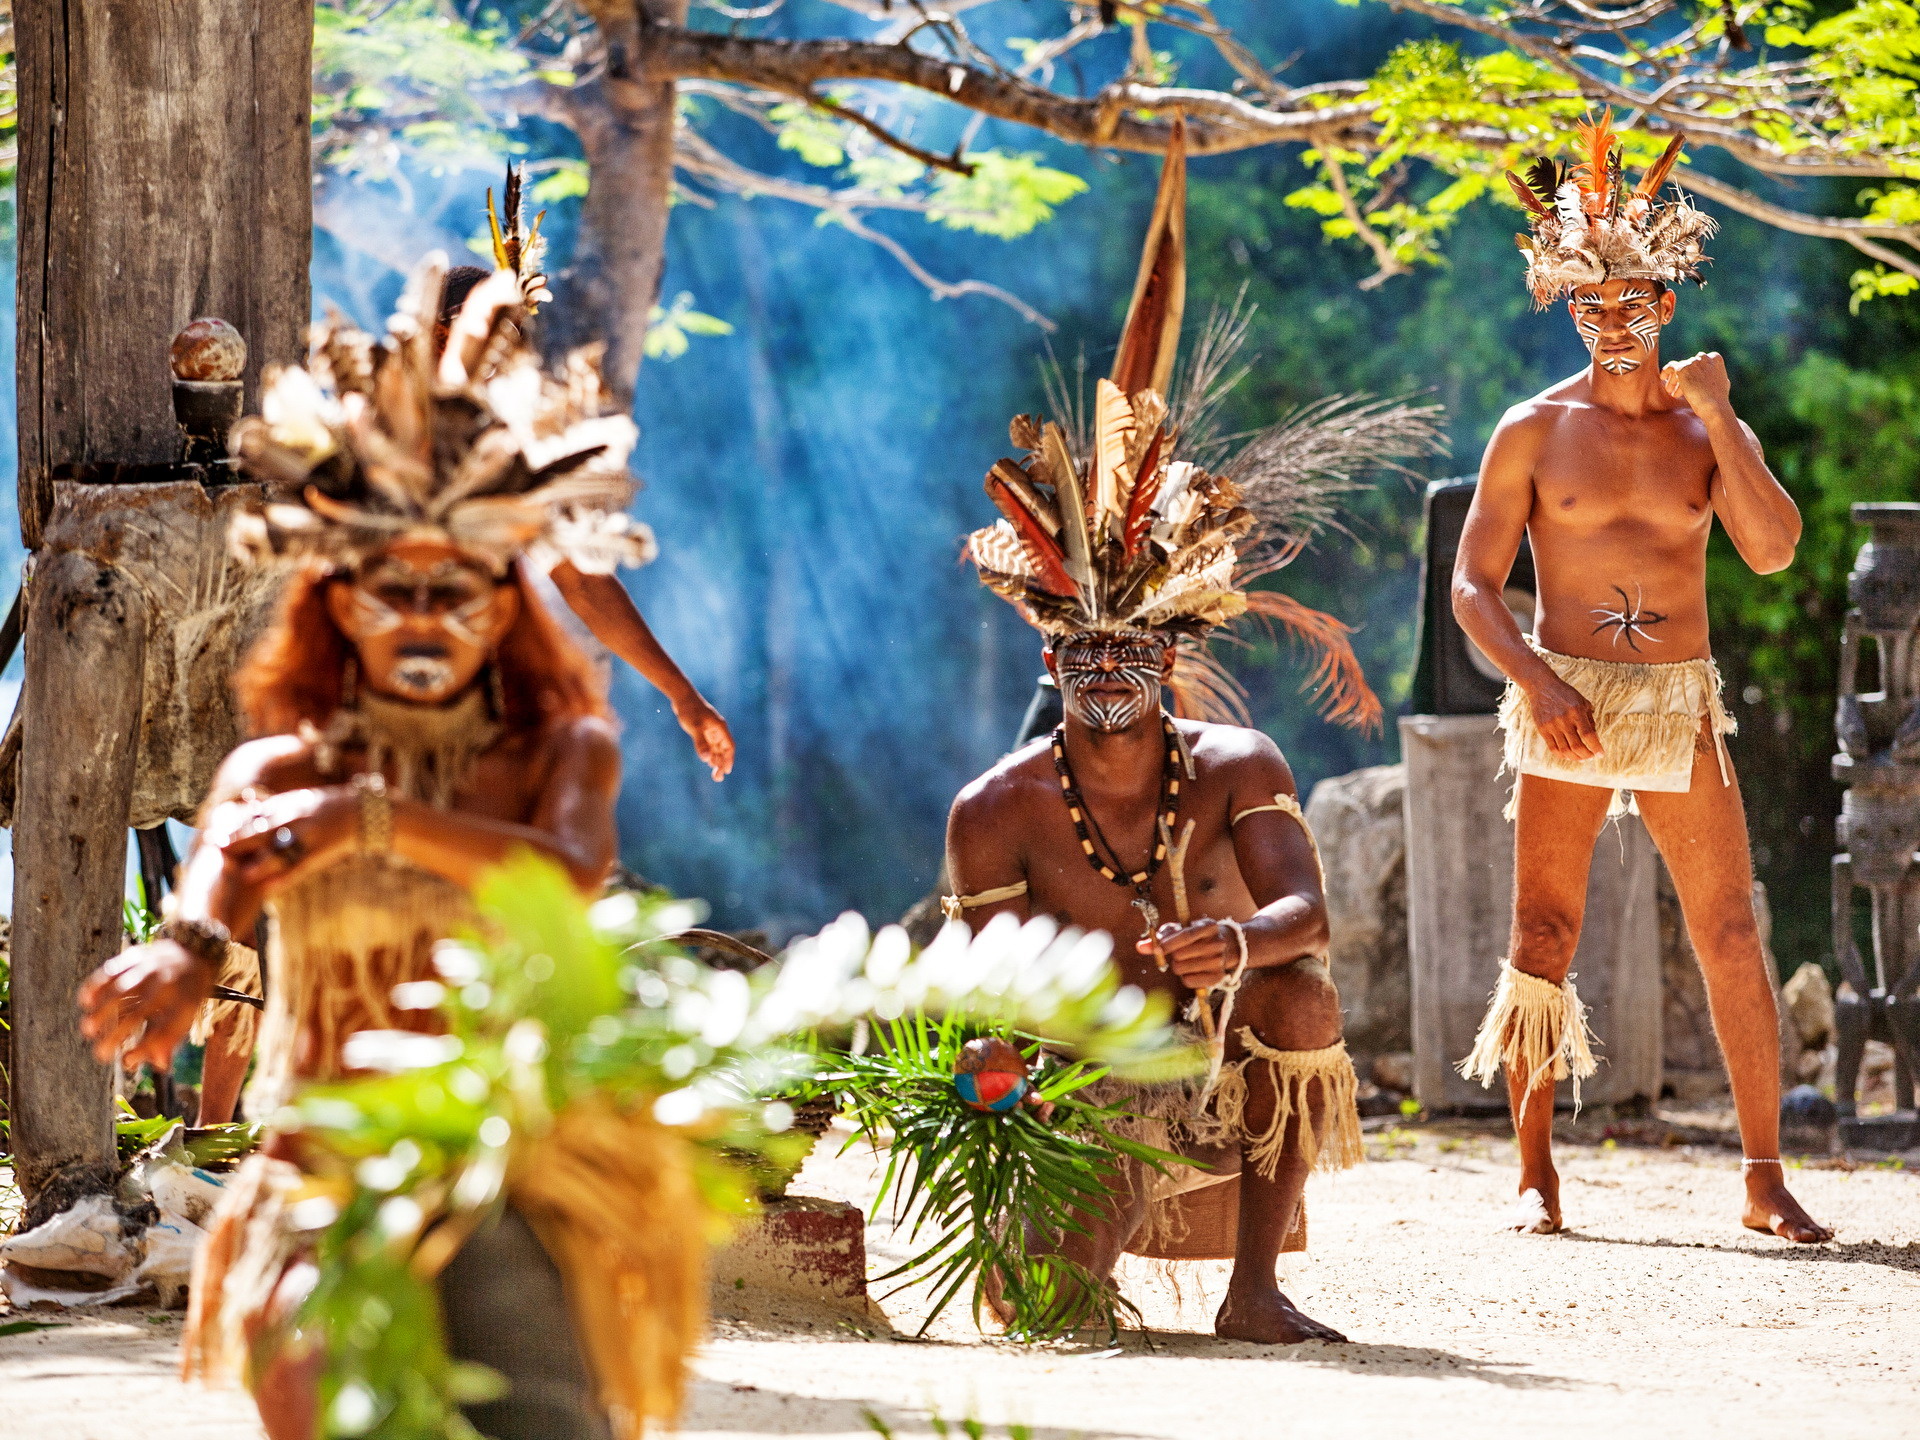 Representação do povo Arawak das ilhas do Caribe